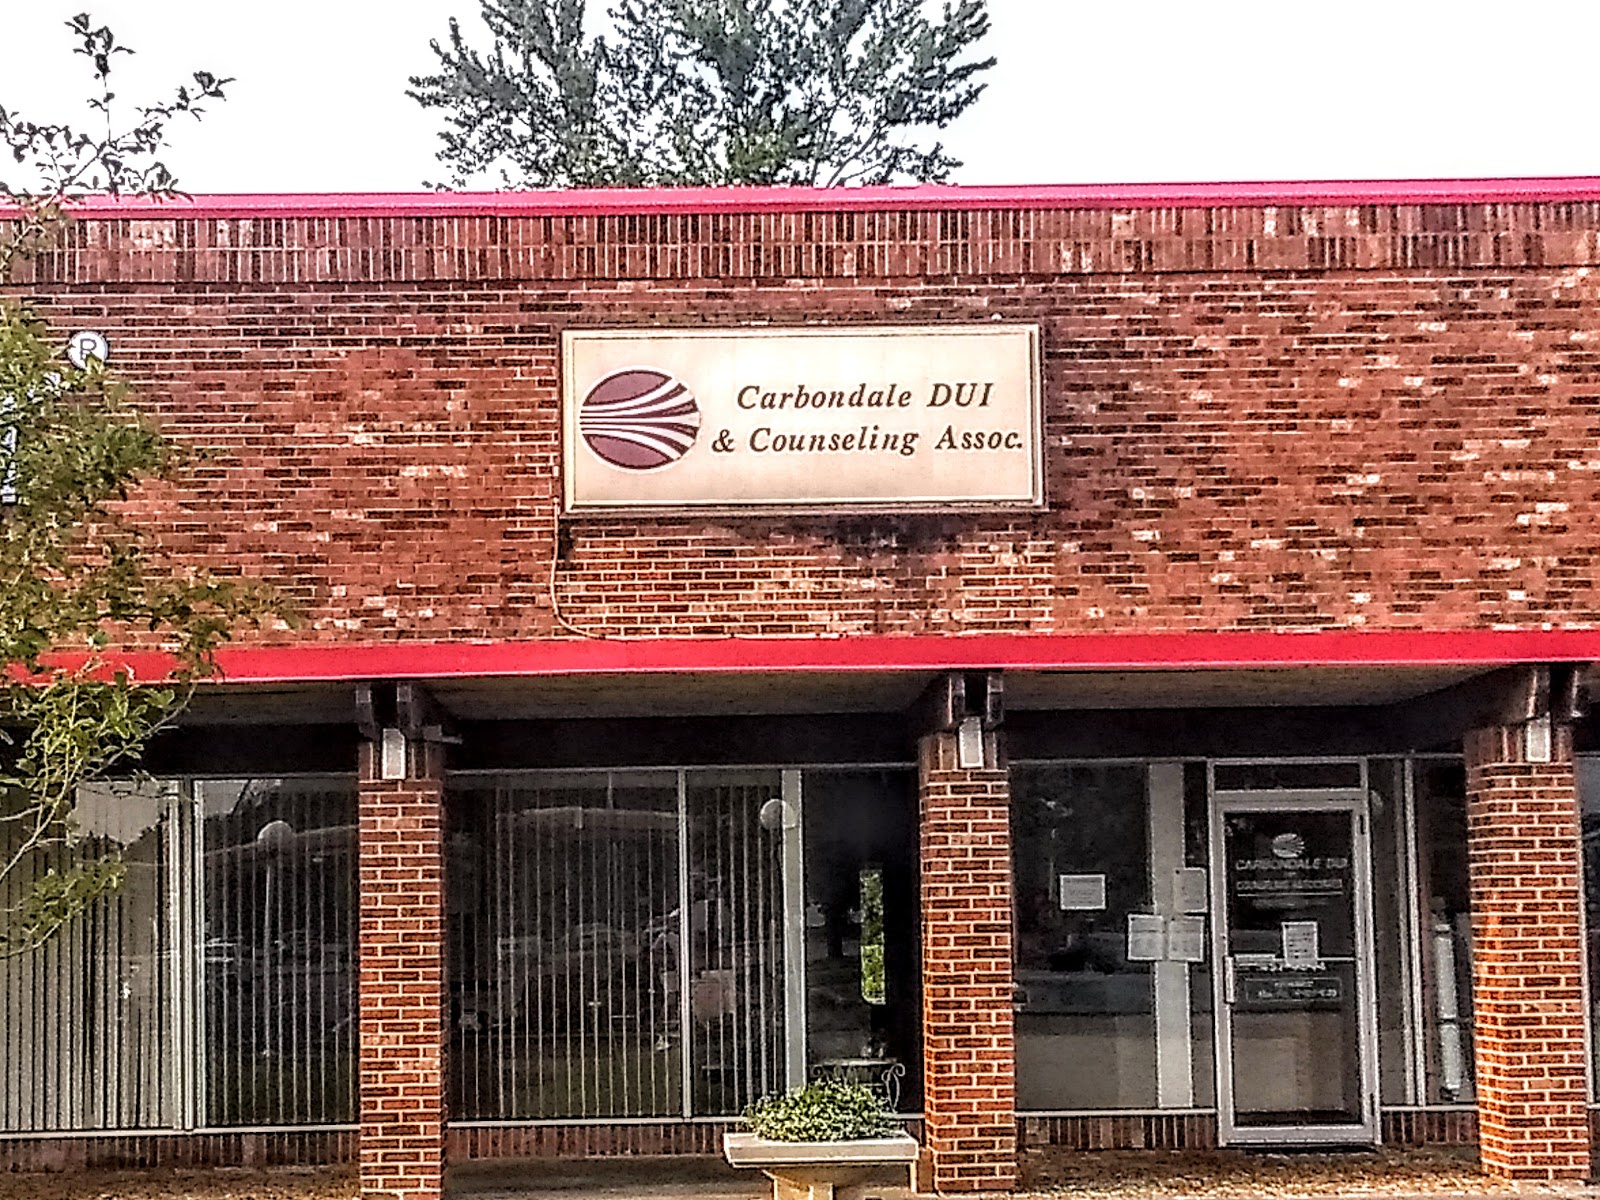 Carbondale DUI & Counseling Associates